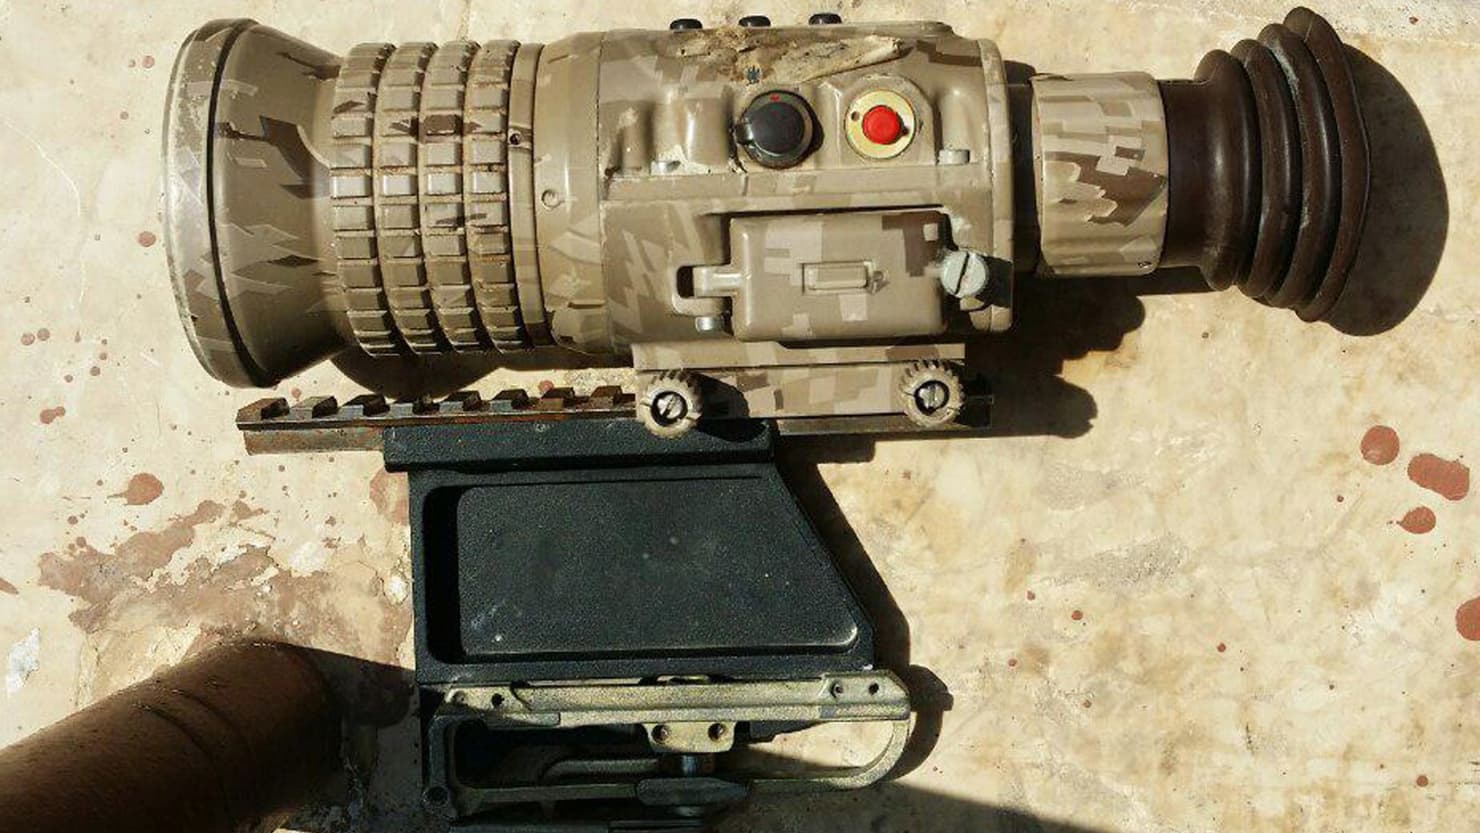 Kurdistan Presidency provides the Peshmerga with thermographic cameras